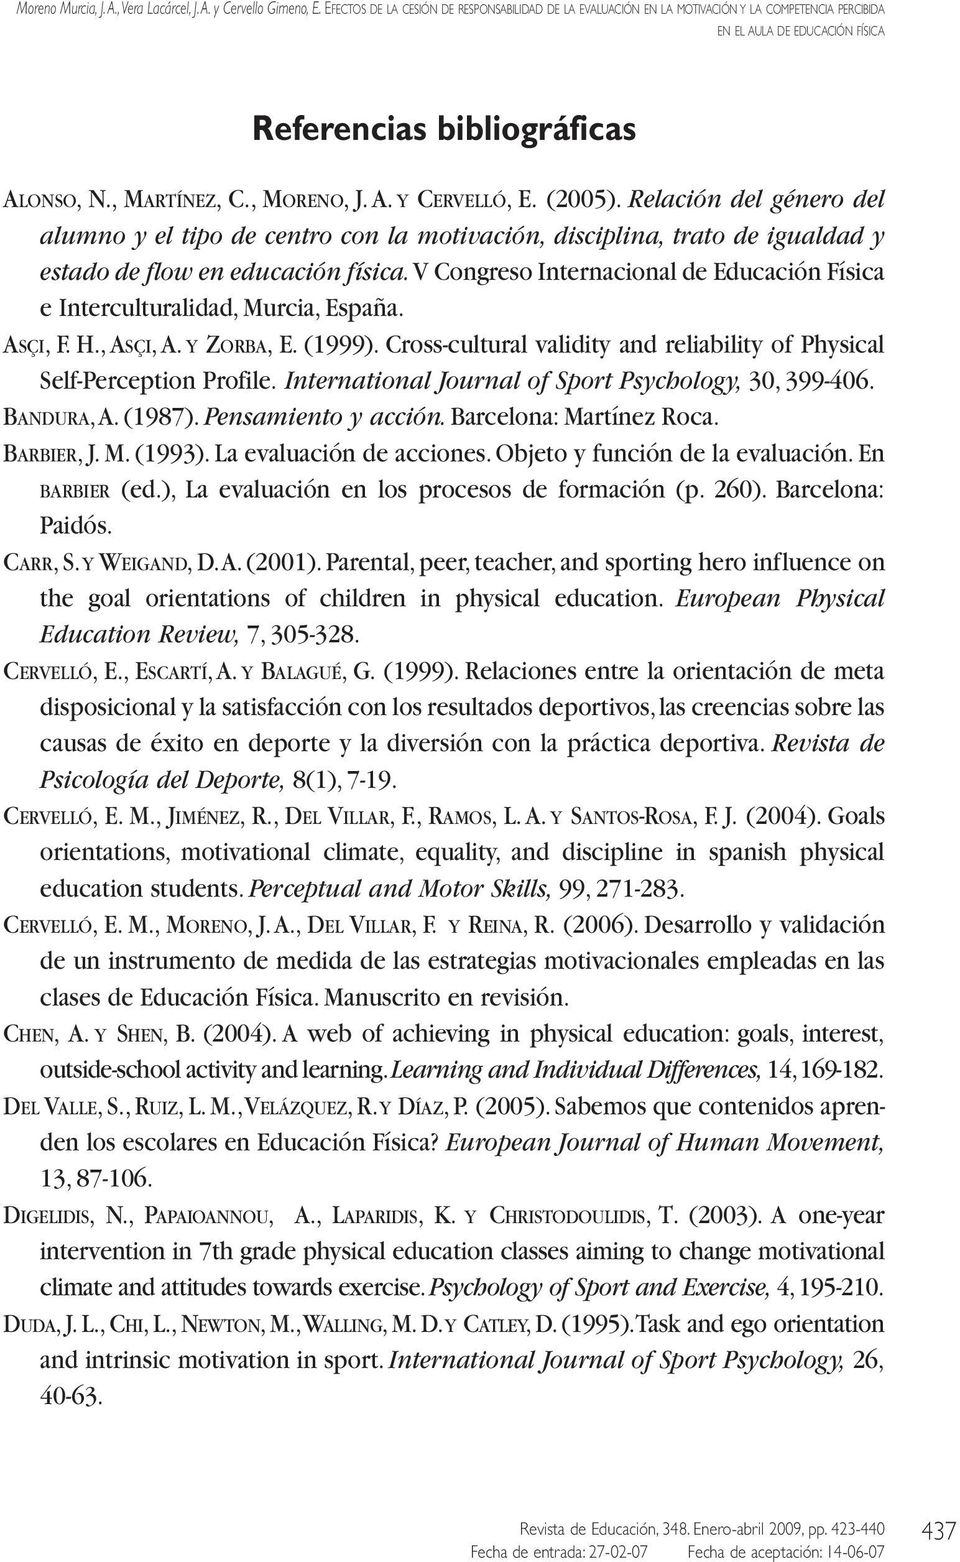 V Congreso Internacional de Educación Física e Interculturalidad, Murcia, España. ASÇI, F. H.,ASÇI,A. Y ZORBA, E. (1999). Cross-cultural validity and reliability of Physical Self-Perception Profile.